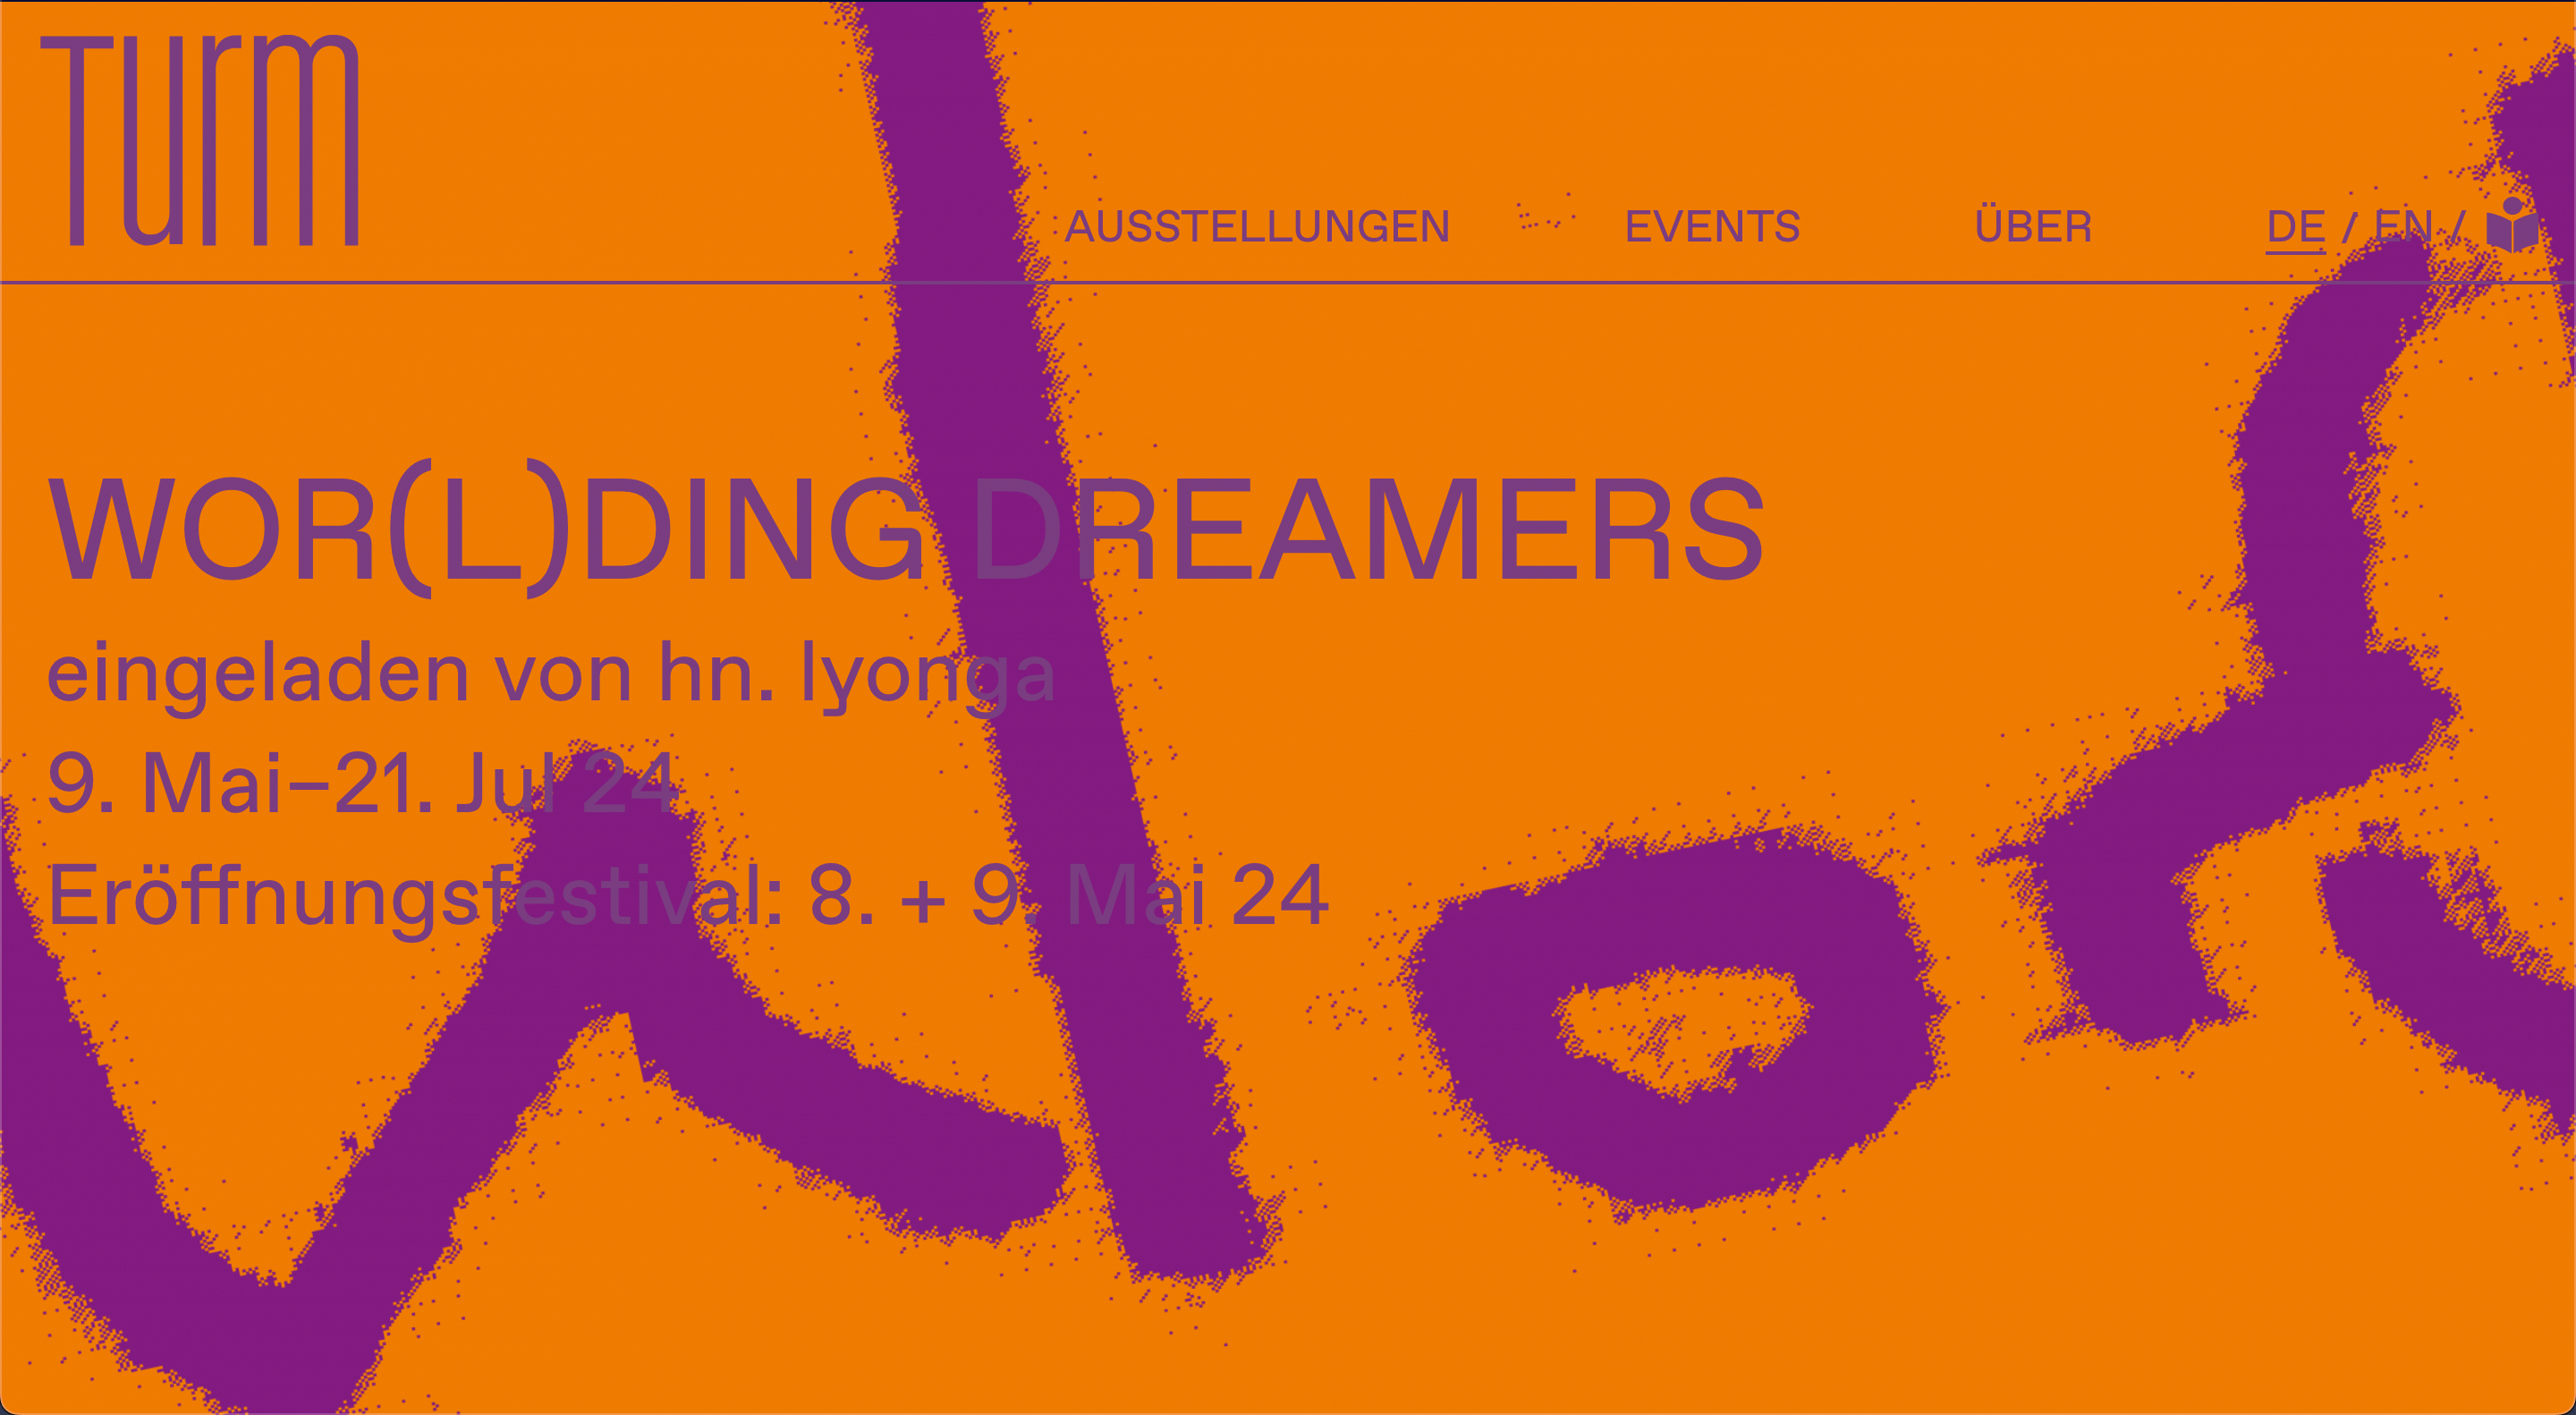 Bildschirmfüllend das Titelbild der aktuellen Ausstellung überlagert mit Text